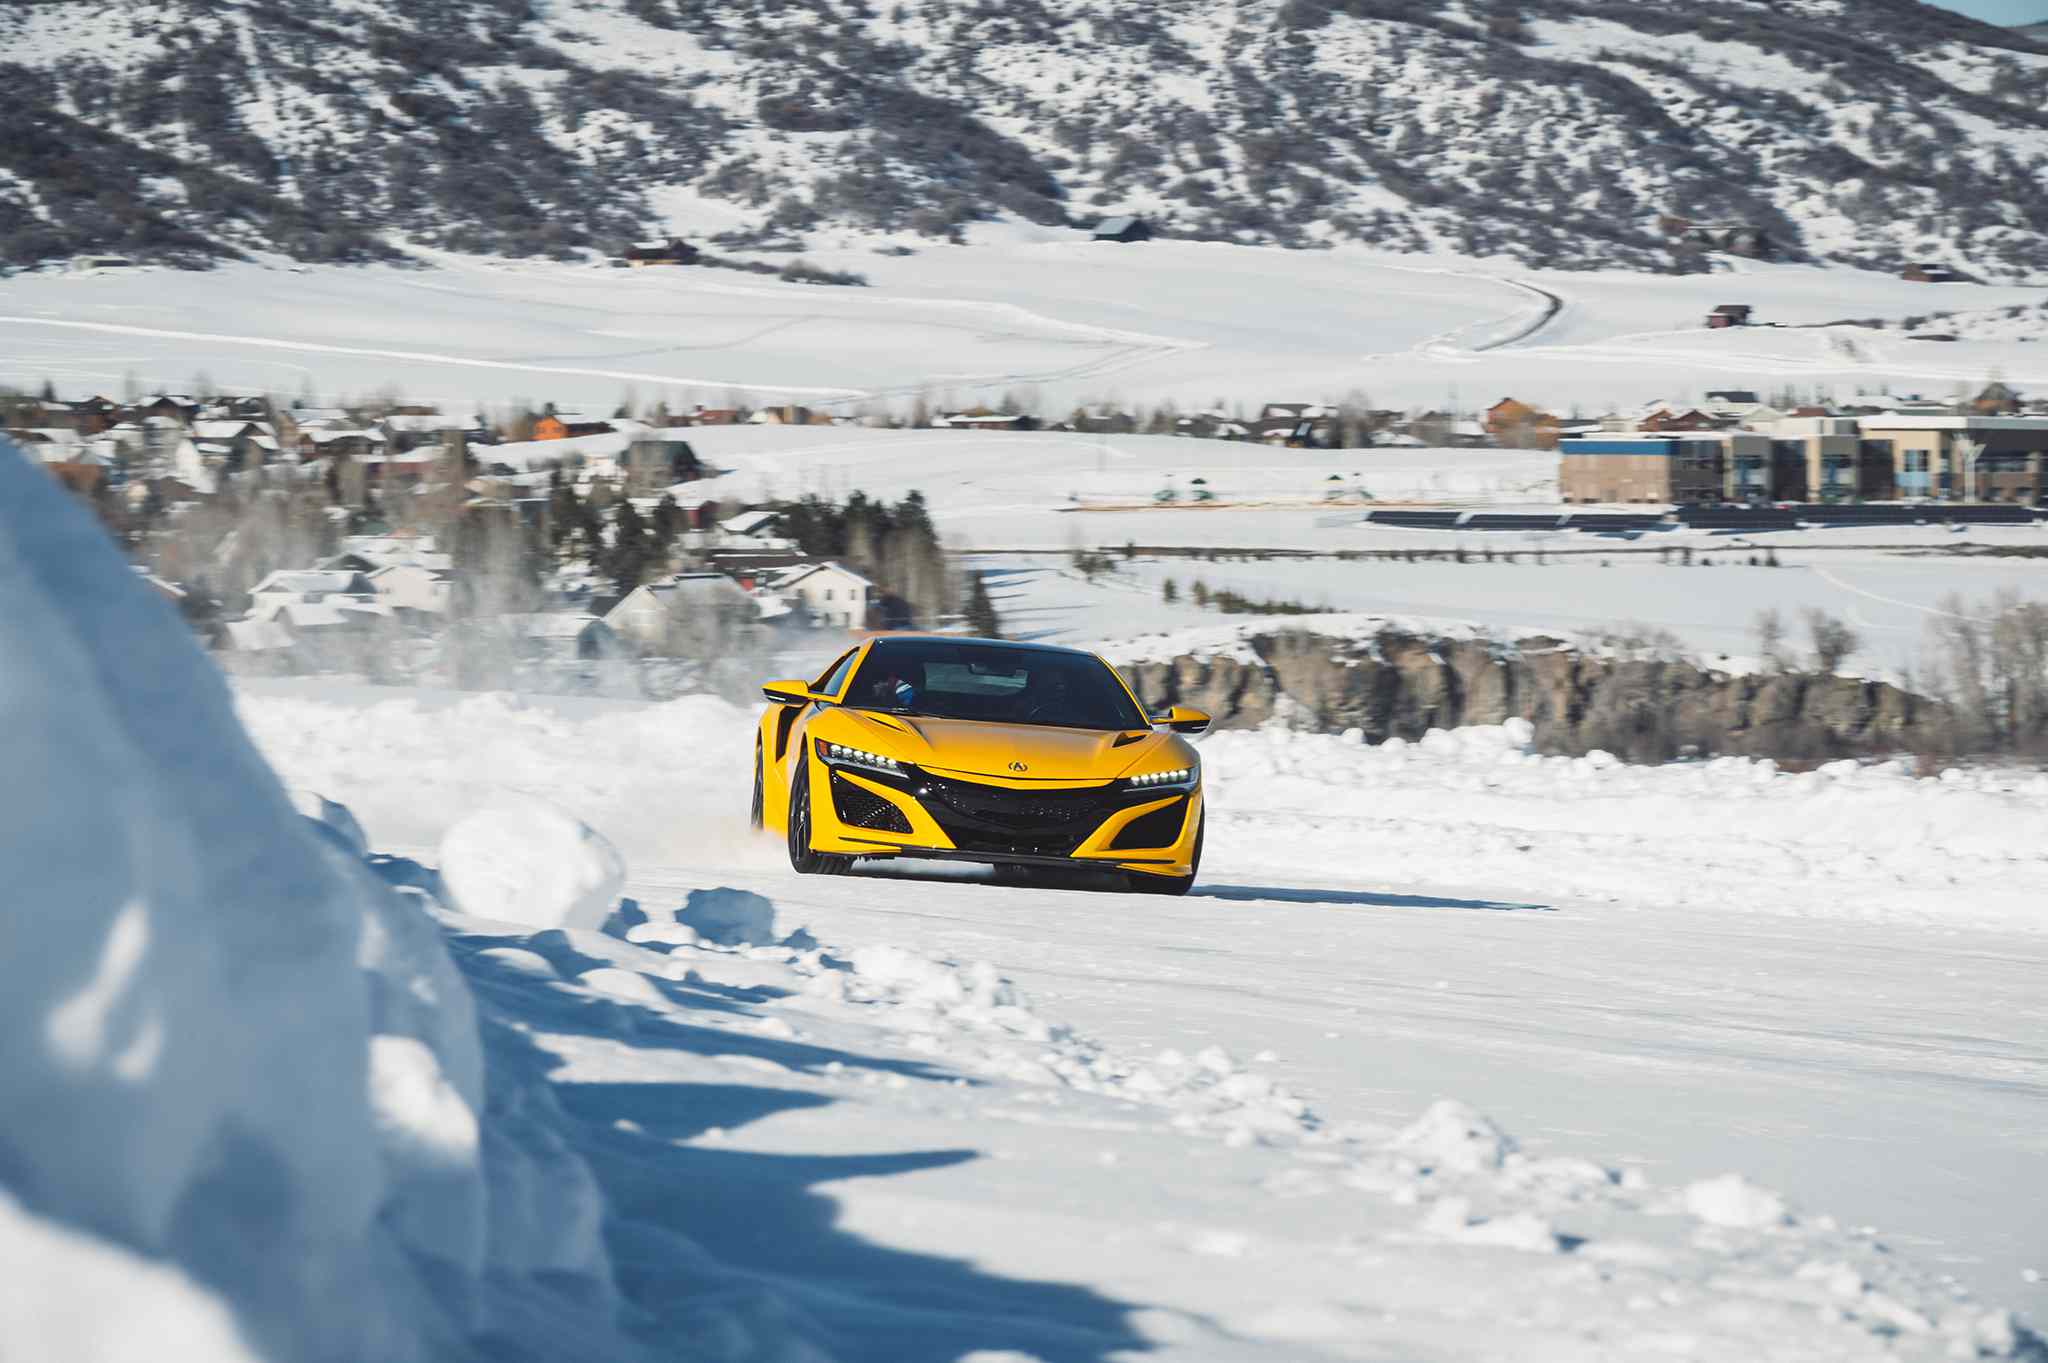 Um carro de teste Bridgestone amarelo dirigindo em um curso de neve para testar a tração dos pneus.